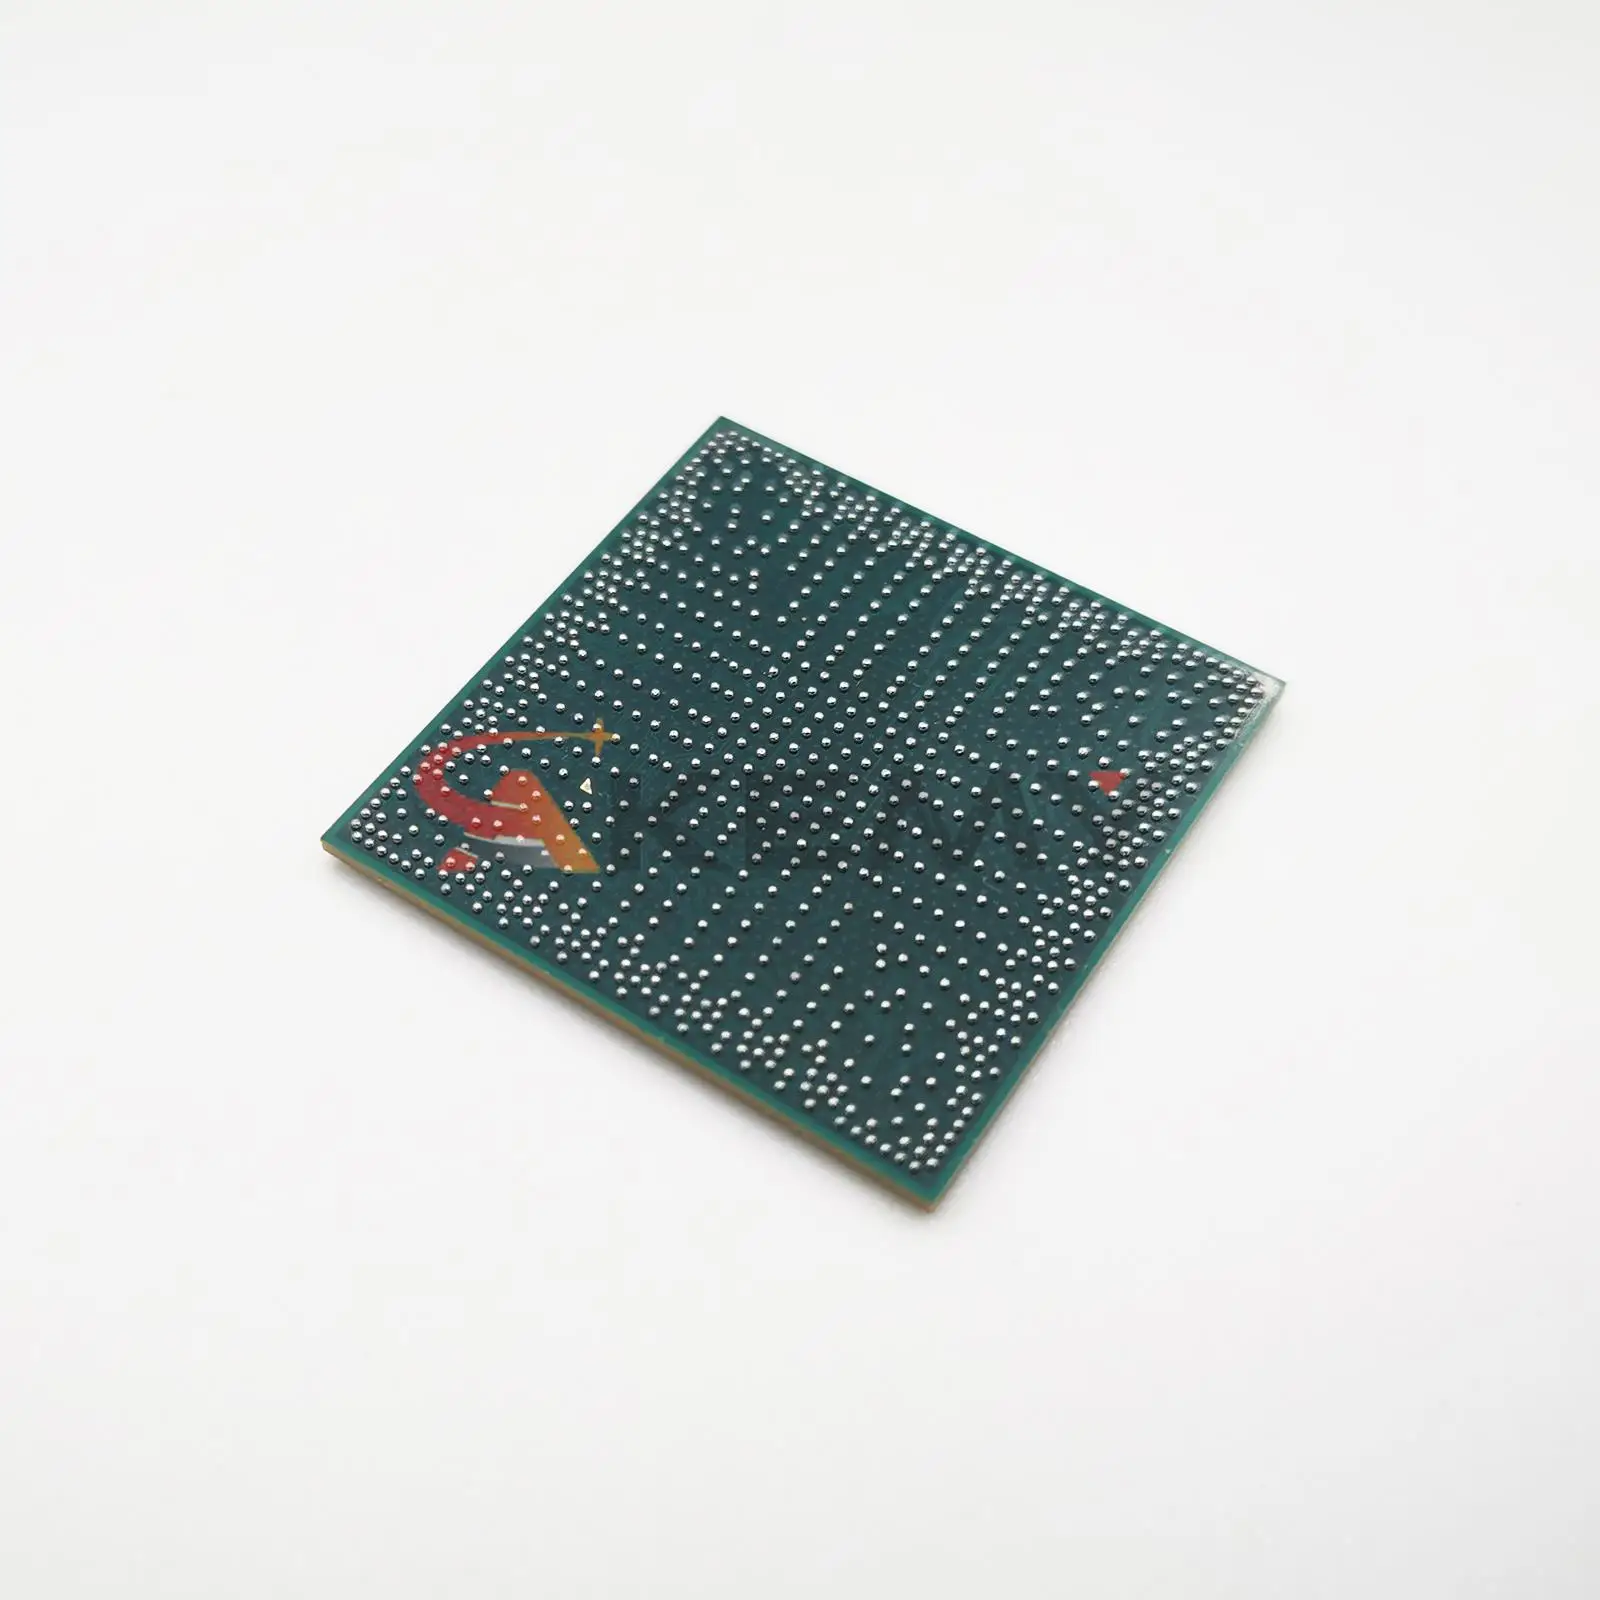 100% New GL82HM175 SR30W BGA Chipset